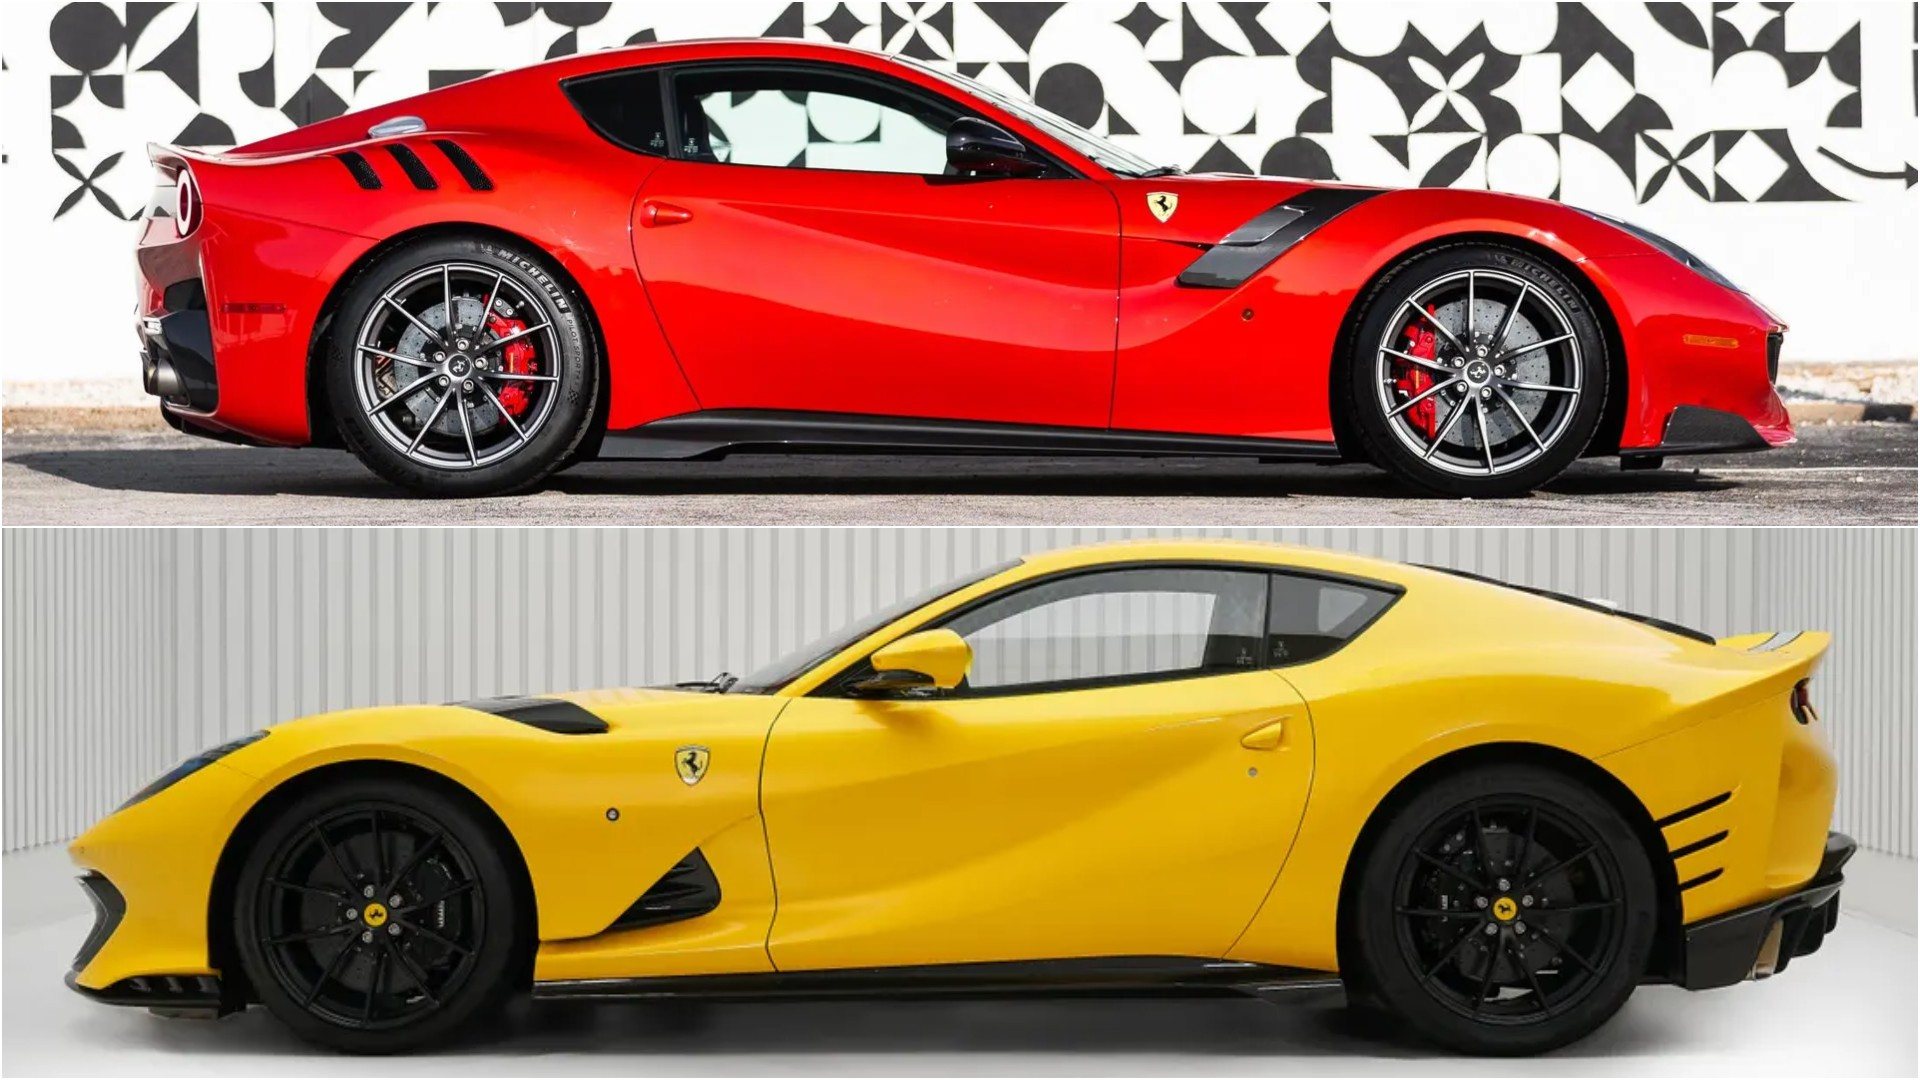 Un Ferrari F12 tdf y un Ferrari 812 Competizione a la venta, ¿con cuál te quedas?